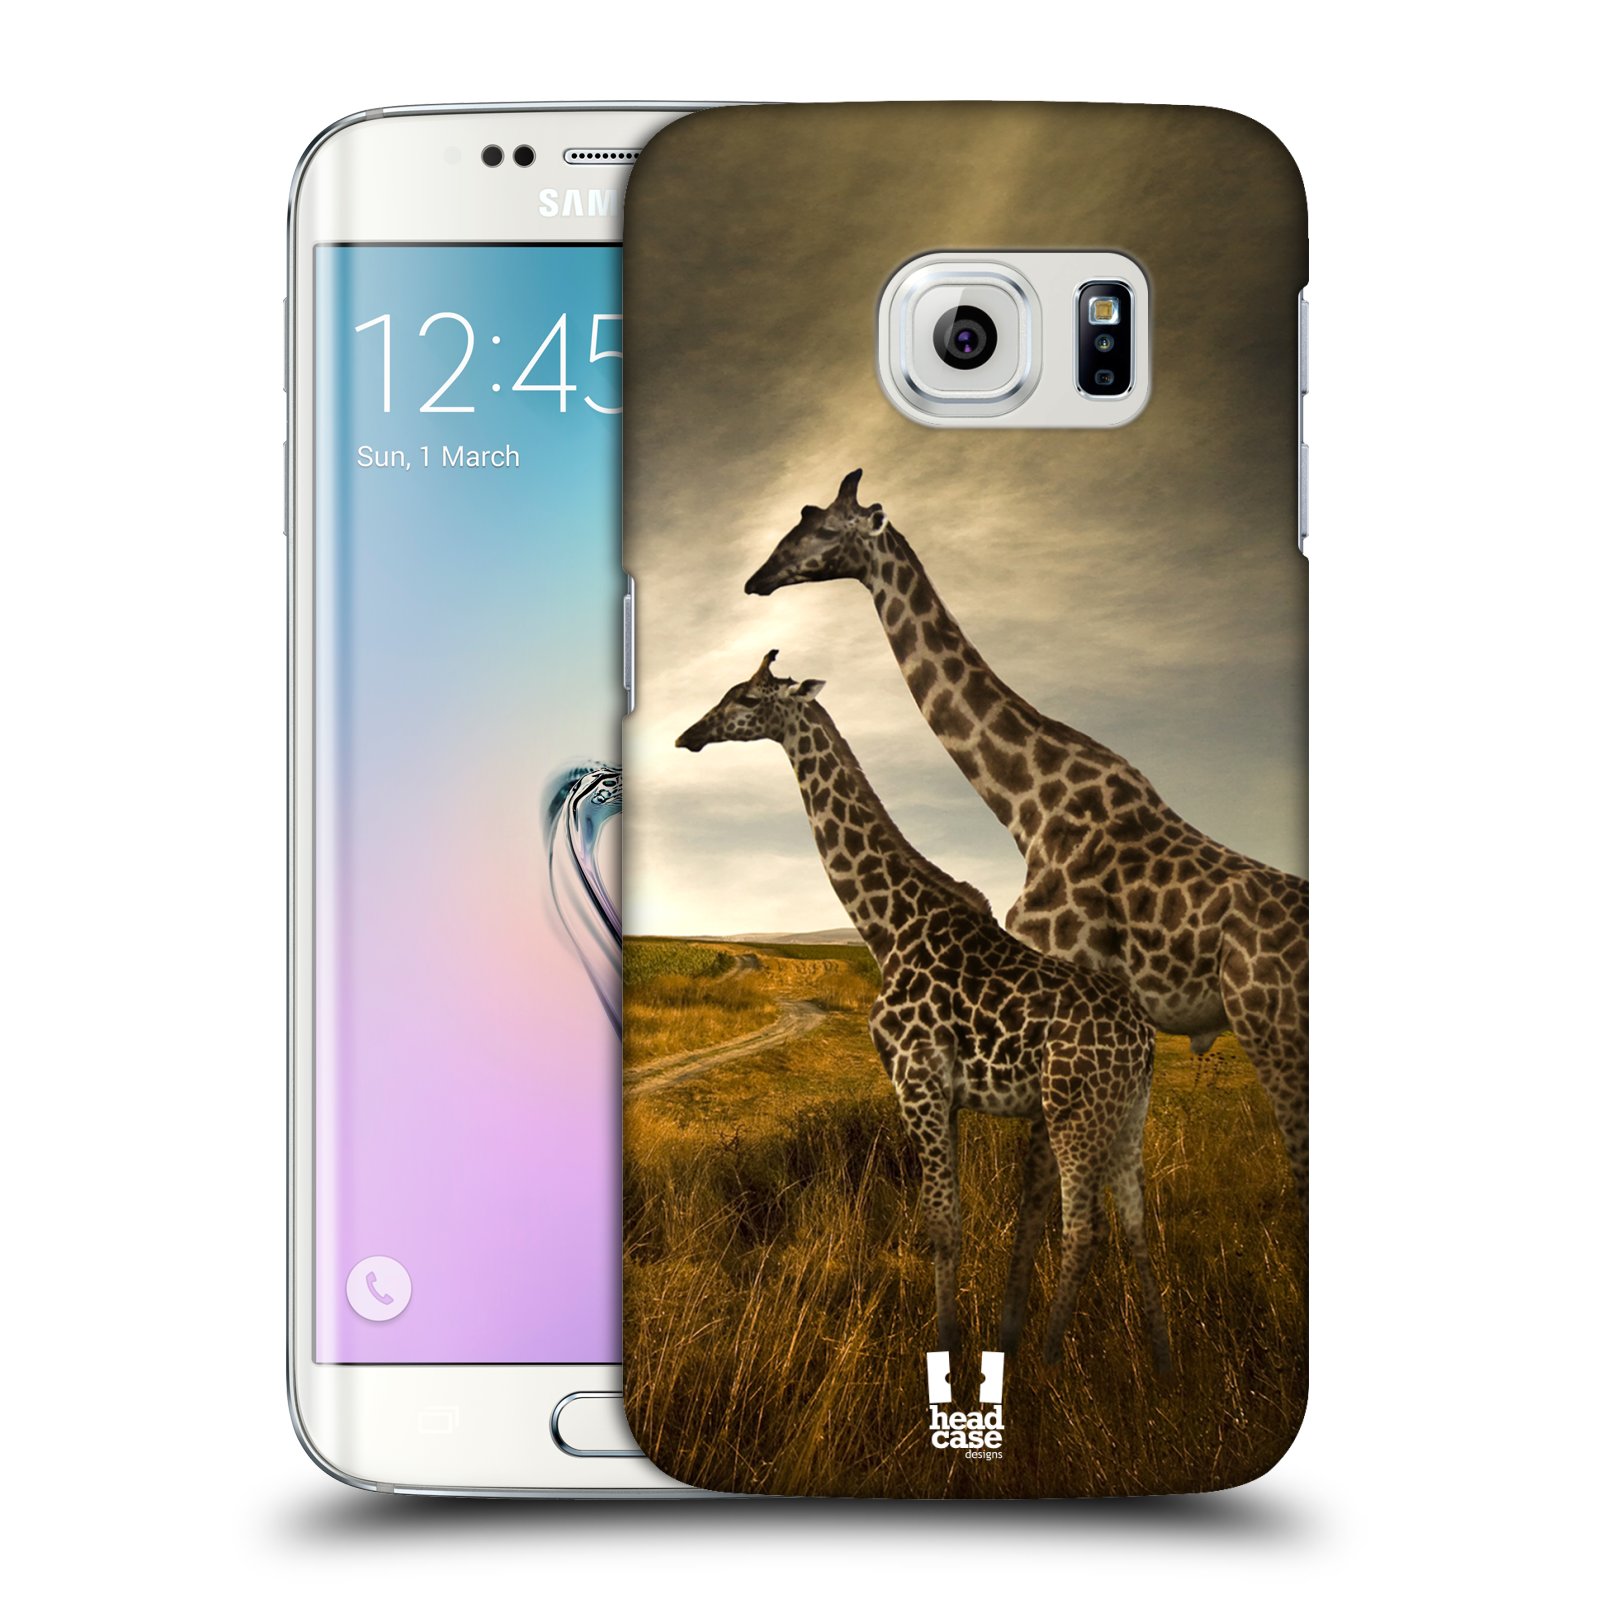 Zadní obal pro mobil Samsung Galaxy S6 EDGE - HEAD CASE - Svět zvířat žirafy